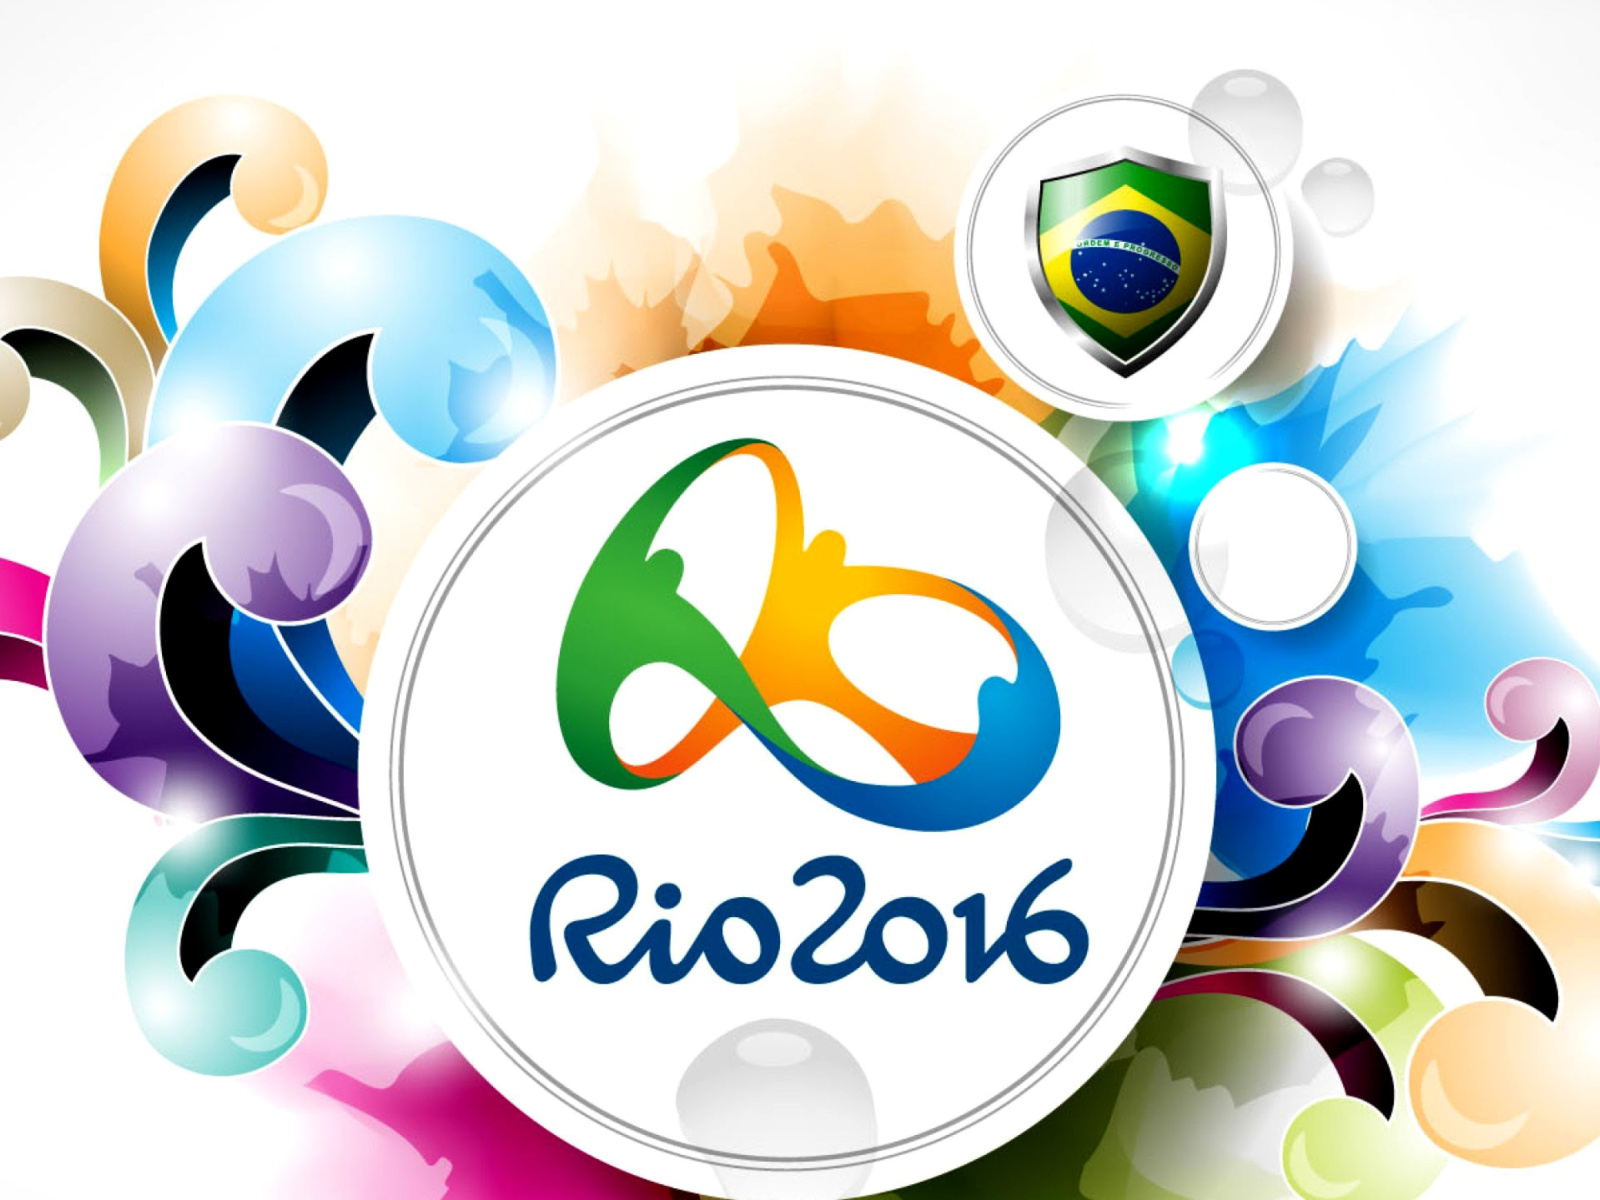 Обои Olympic Games Rio 2016 1600x1200